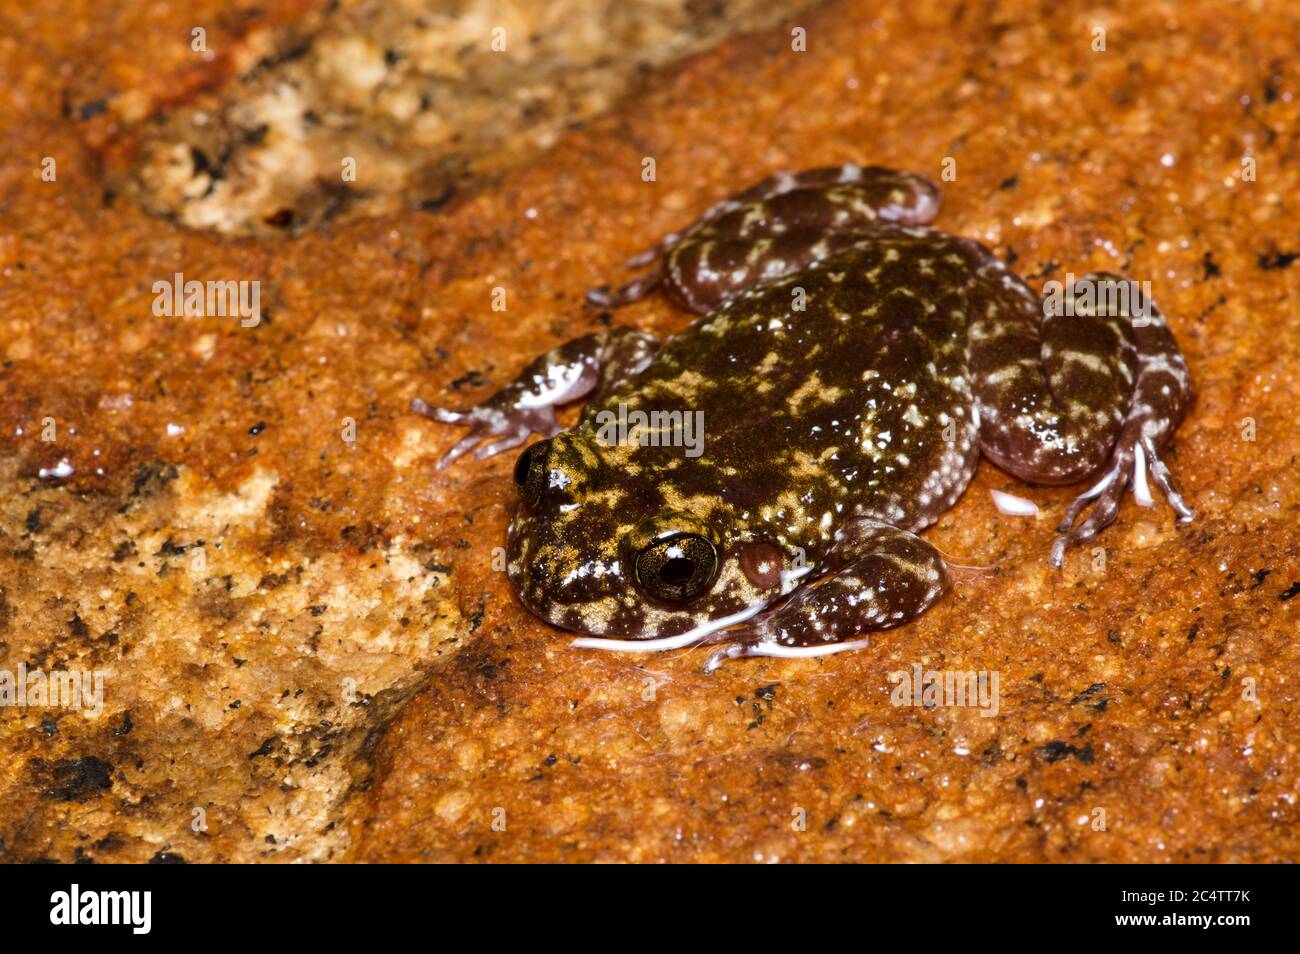 Une grenouille en marbre (Nannophyrys marmorata) en danger critique d'extinction sur une roche humide dans la réserve forestière de Knuckles, au Sri Lanka Banque D'Images